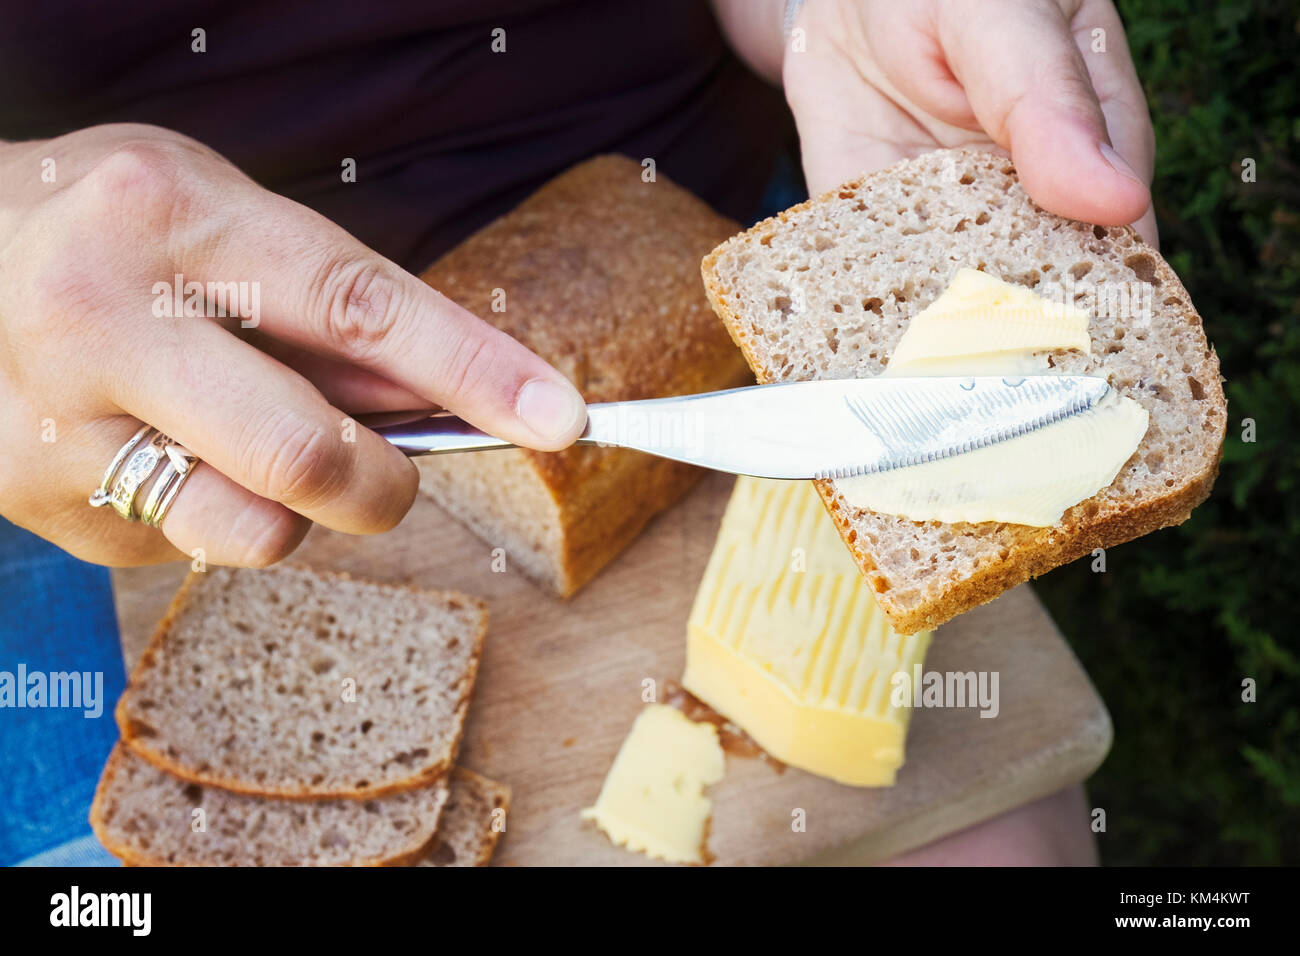 Une personne tremper votre pain avec un couteau, la préparation des aliments. Banque D'Images